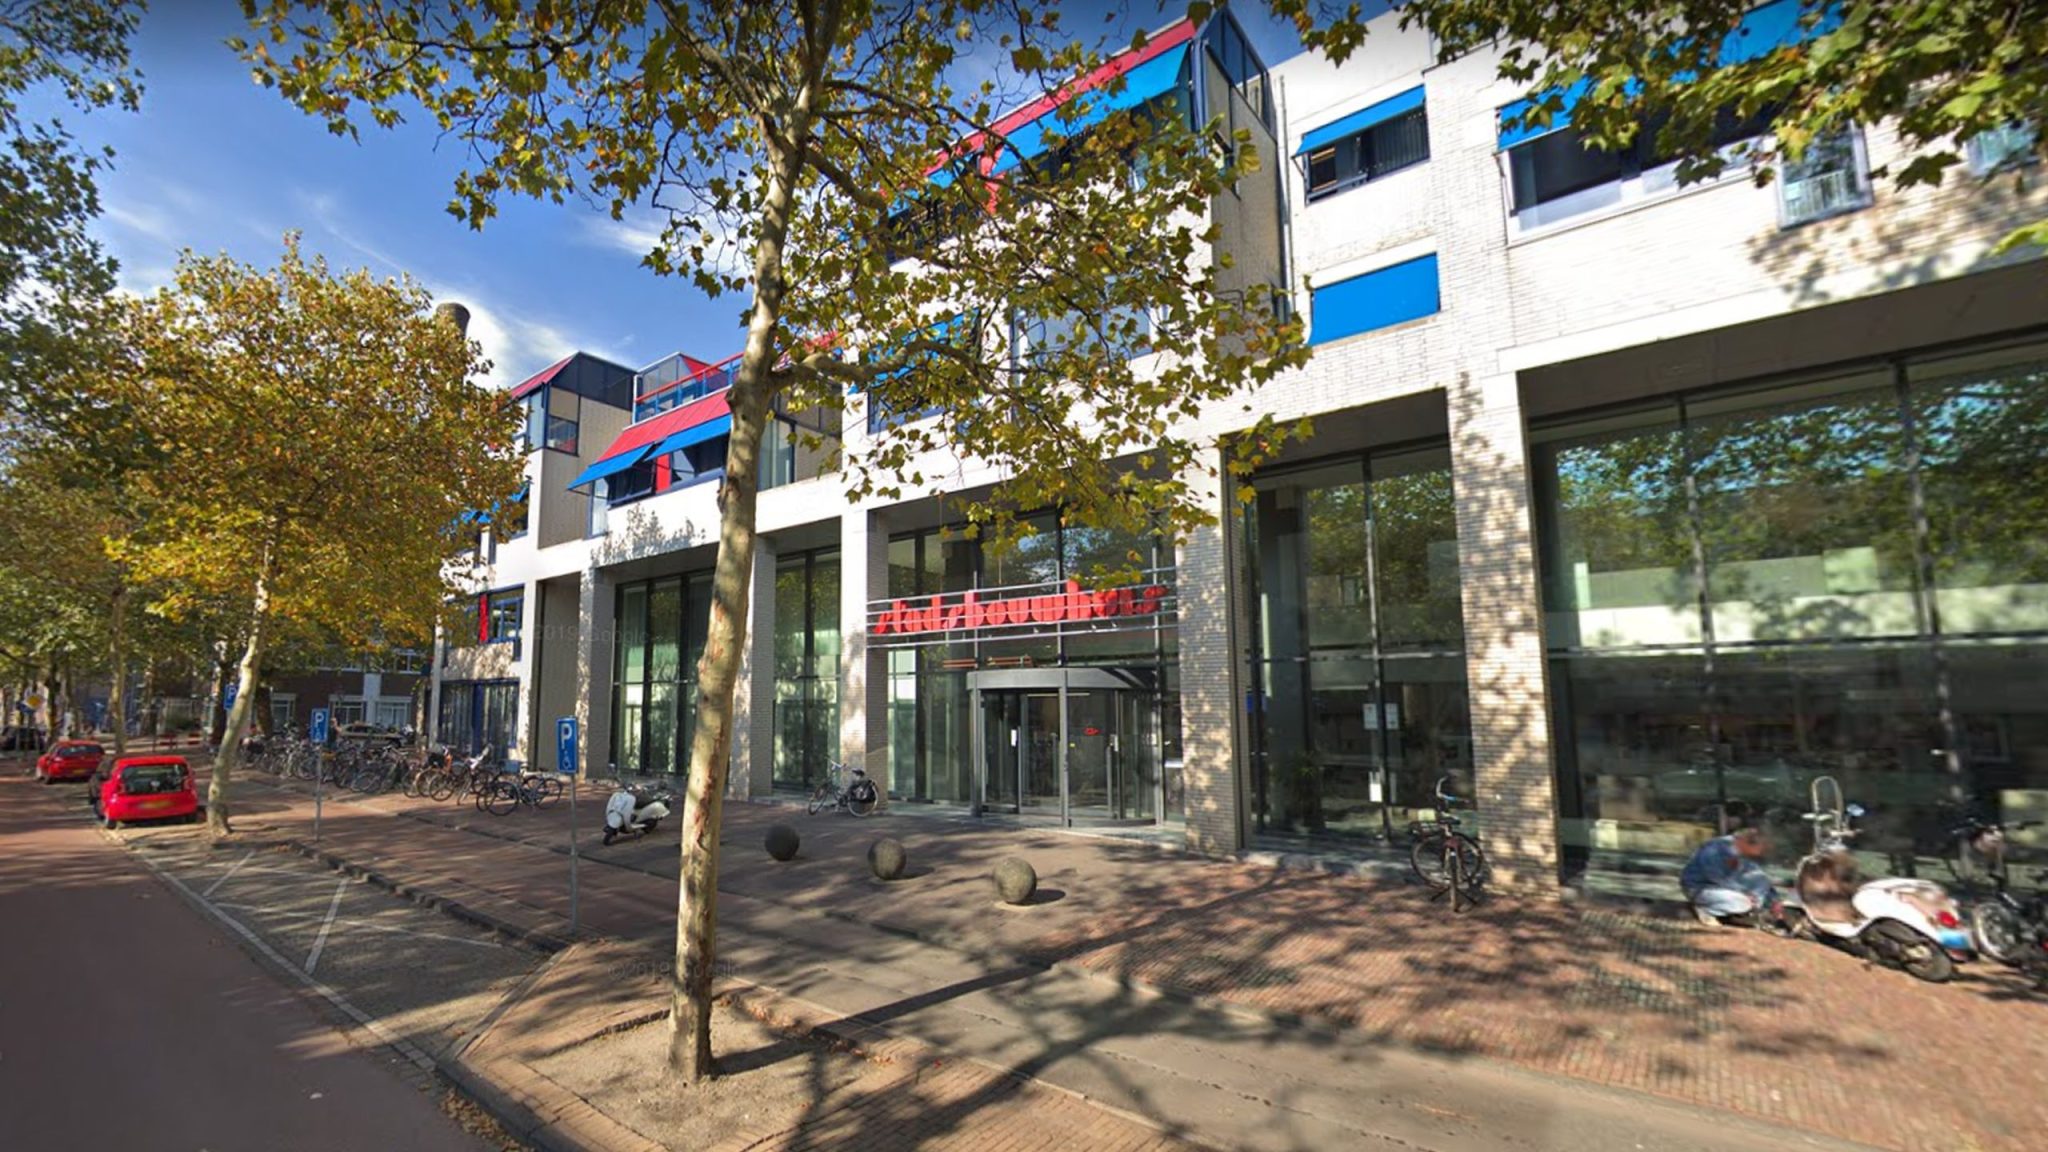 Stadsbouwhuis Leiden Circulair ontwikkeld?